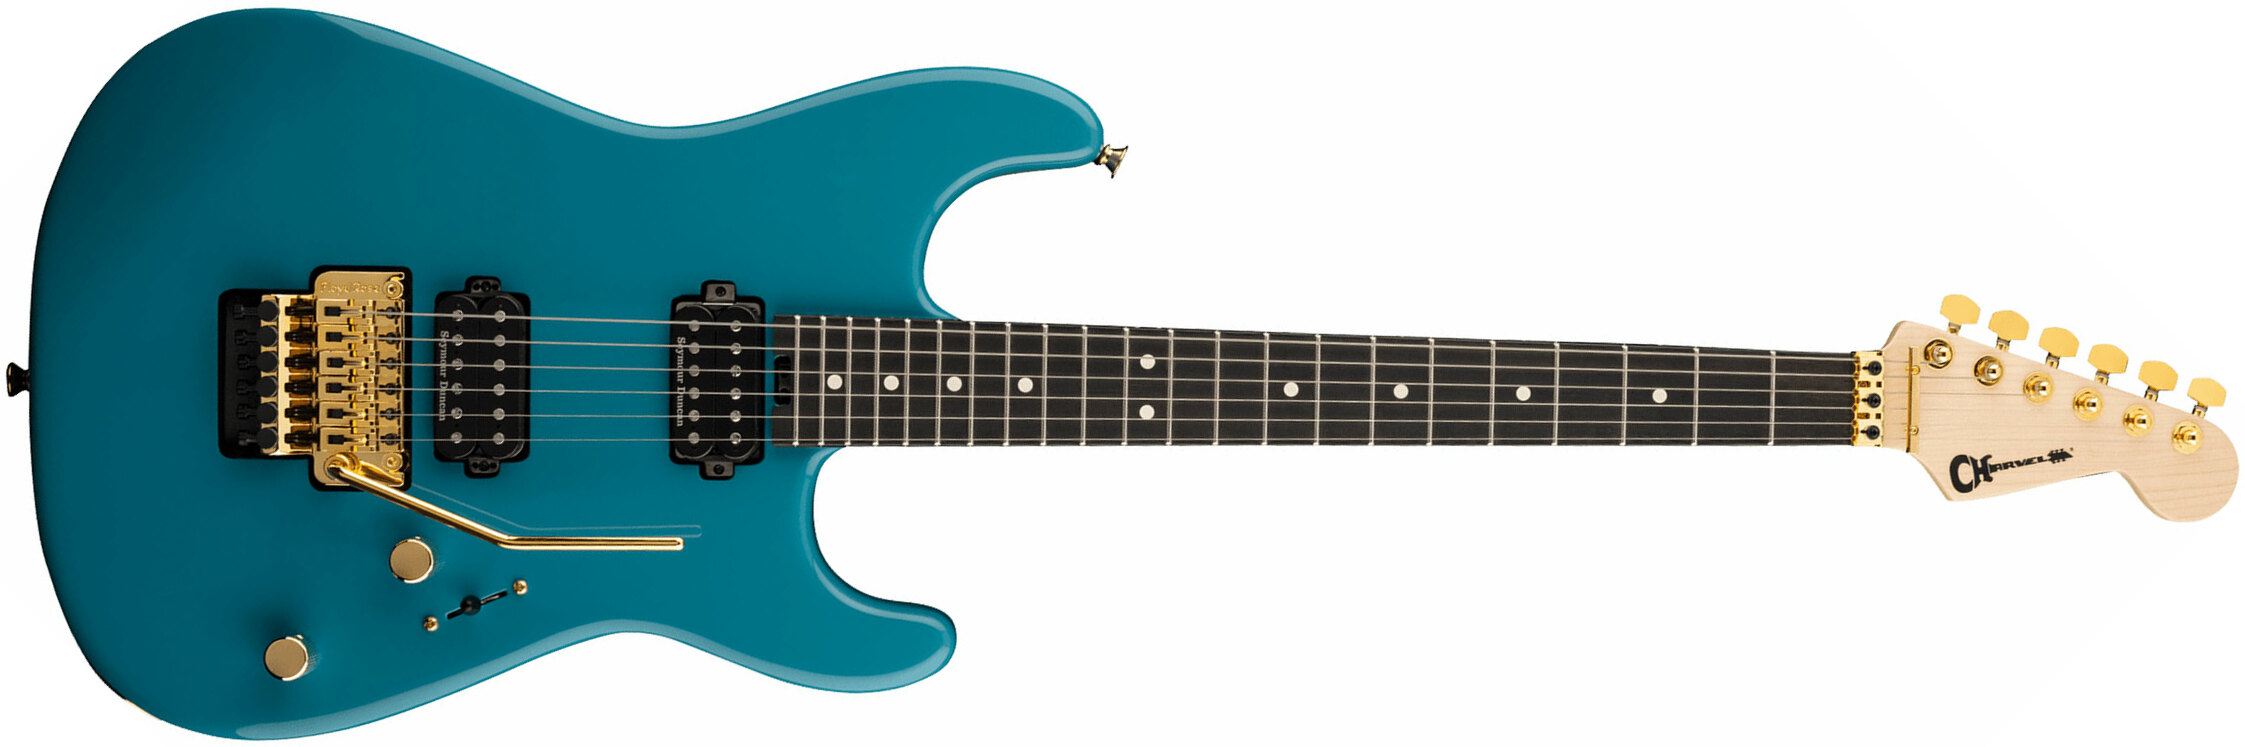 Charvel San Dimas Style 1 Hh Fr E Pro-mod Seymour Duncan Eb - Miami Blue - Guitare Électrique Forme Str - Main picture